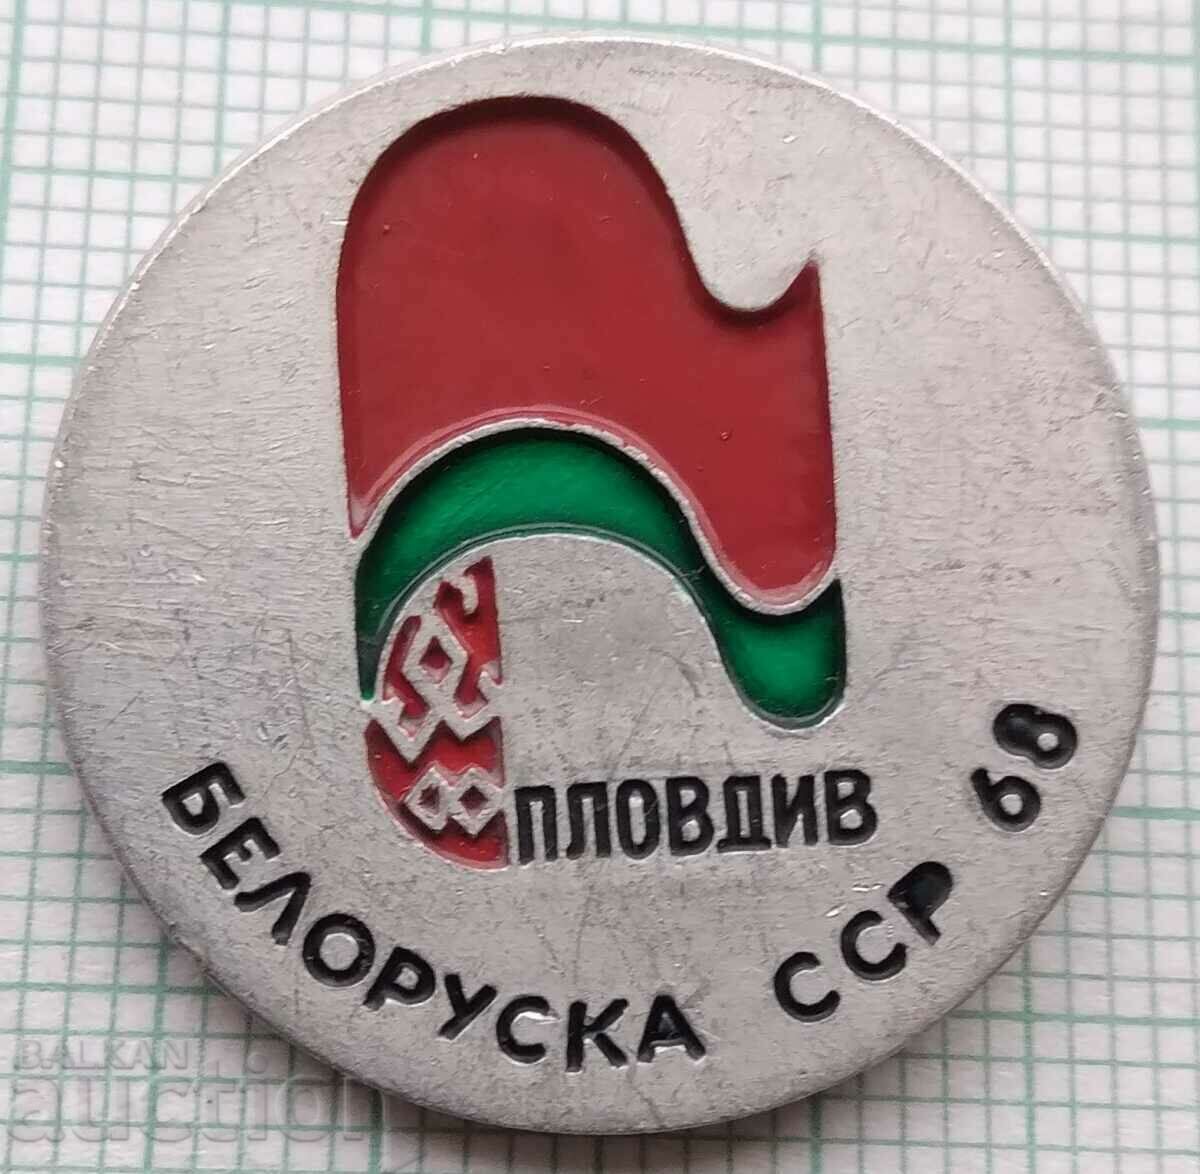 Σήμα 15249 - Έκθεση της Λευκορωσικής ΣΣΔ στο Πλόβντιβ 1968